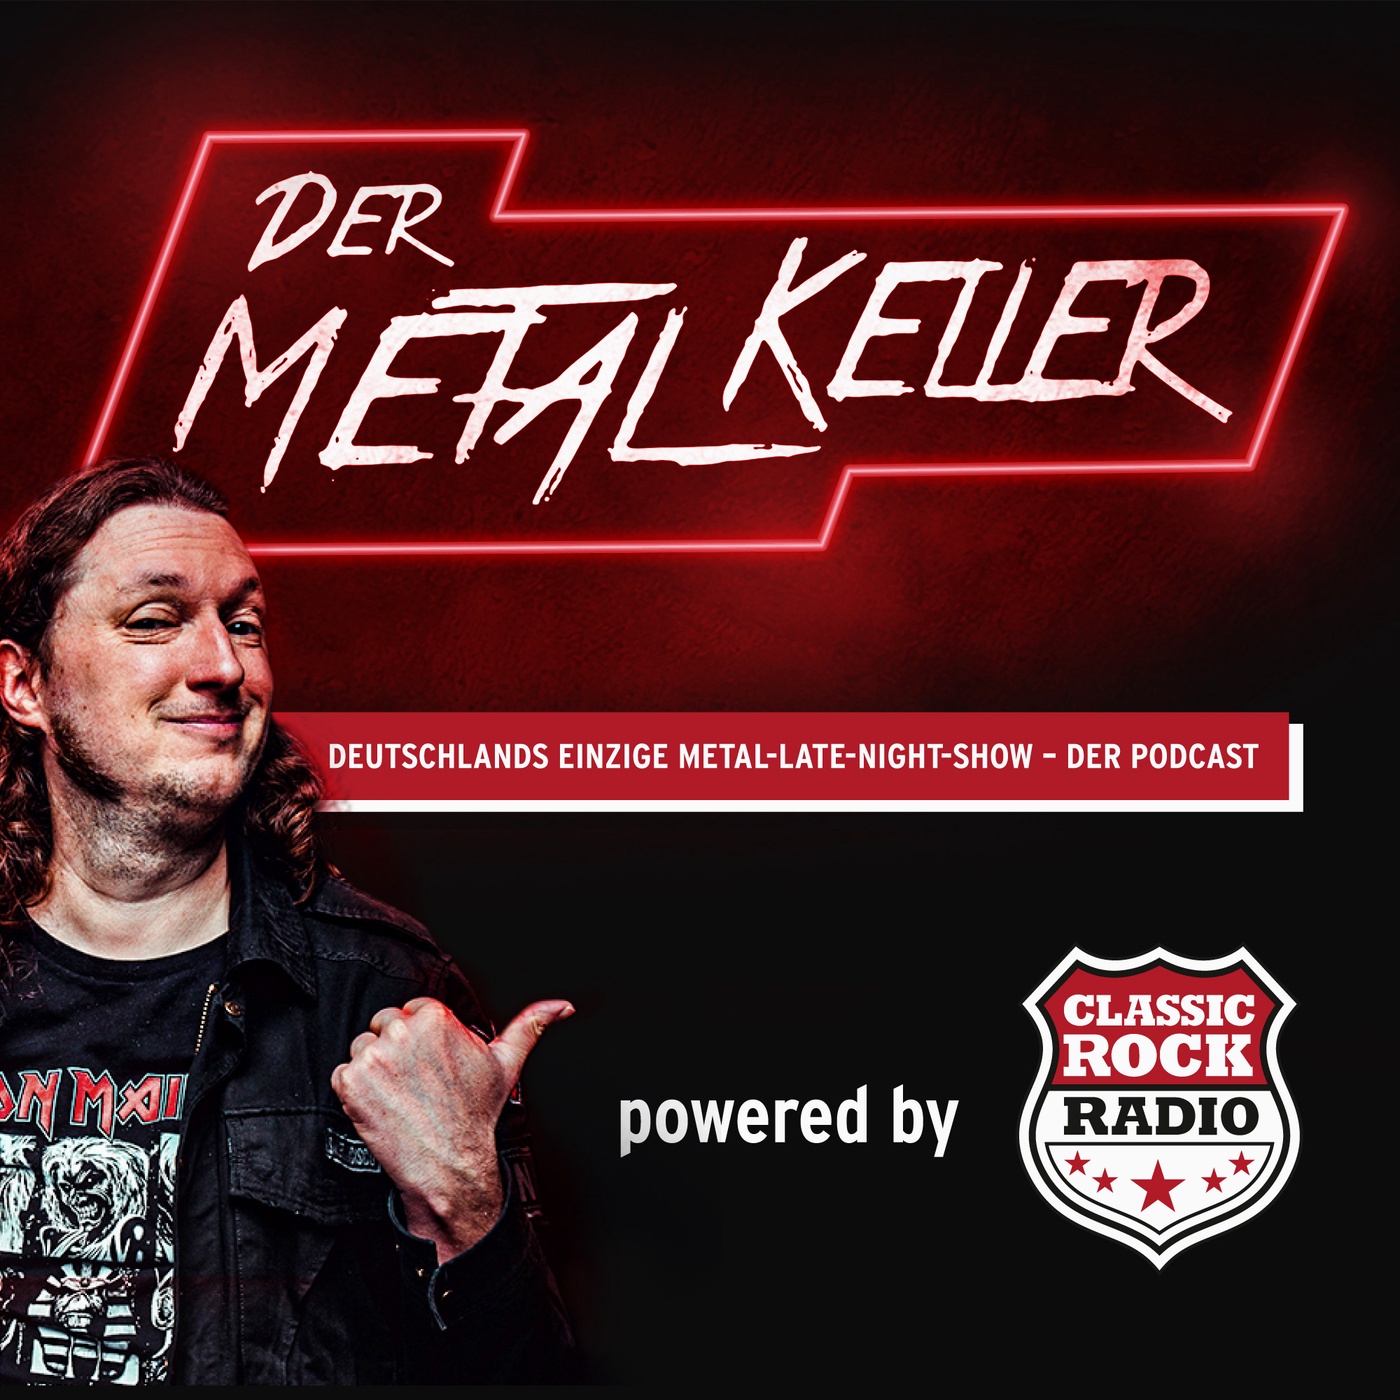 Der METALKELLER - Deutschlands einzige Metal Late Night Show - Der deutsche Metal Podcast